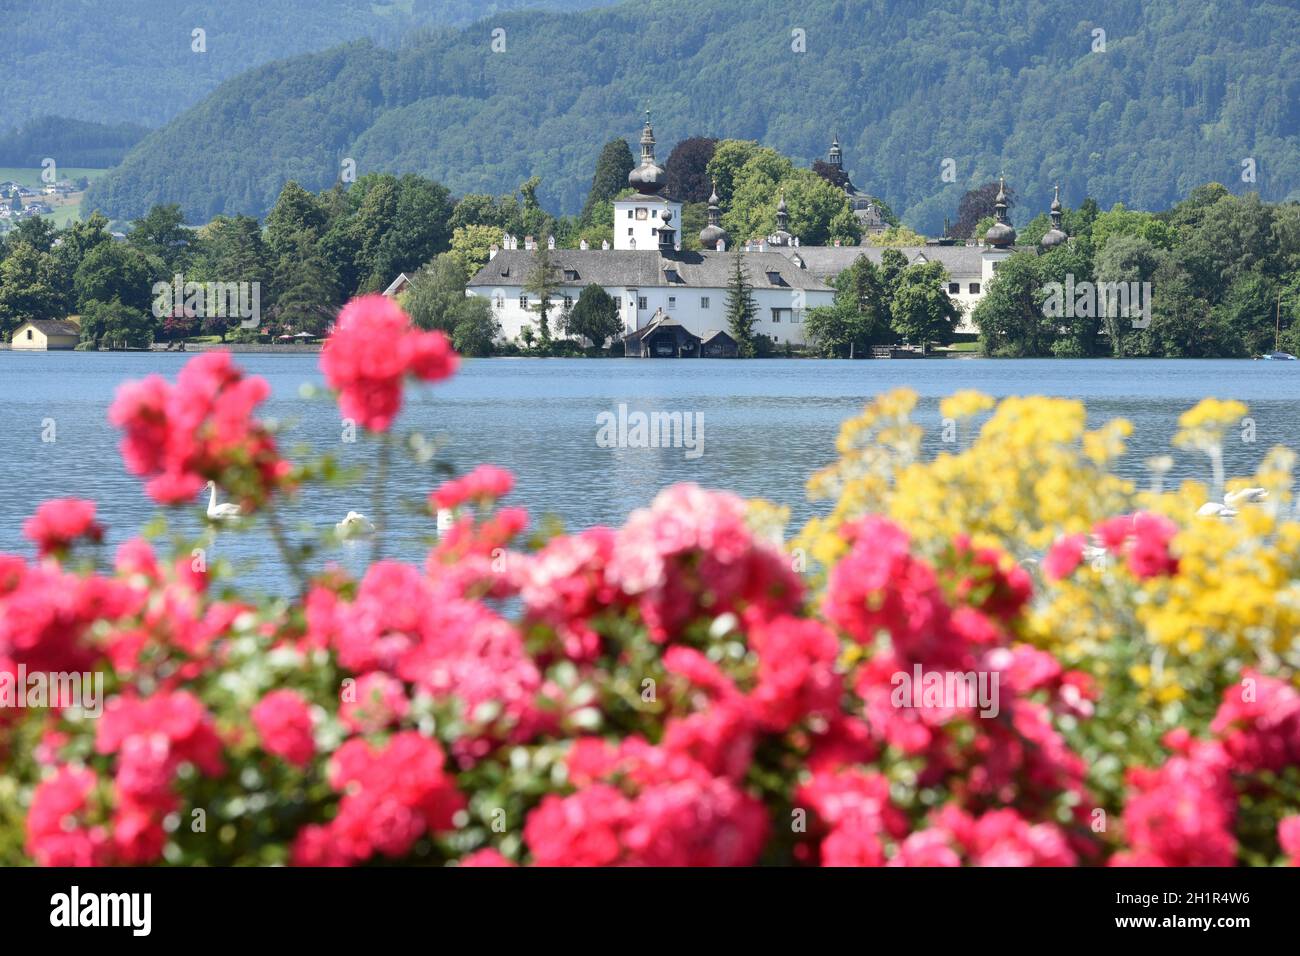 Das Seeschloss Ort am Traunsee in Gmunden mit Blumen und Schwänen, Salzkammergut, Bezirk Gmunden, Oberösterreich, Österreich, Europa - The Lake castle Stock Photo